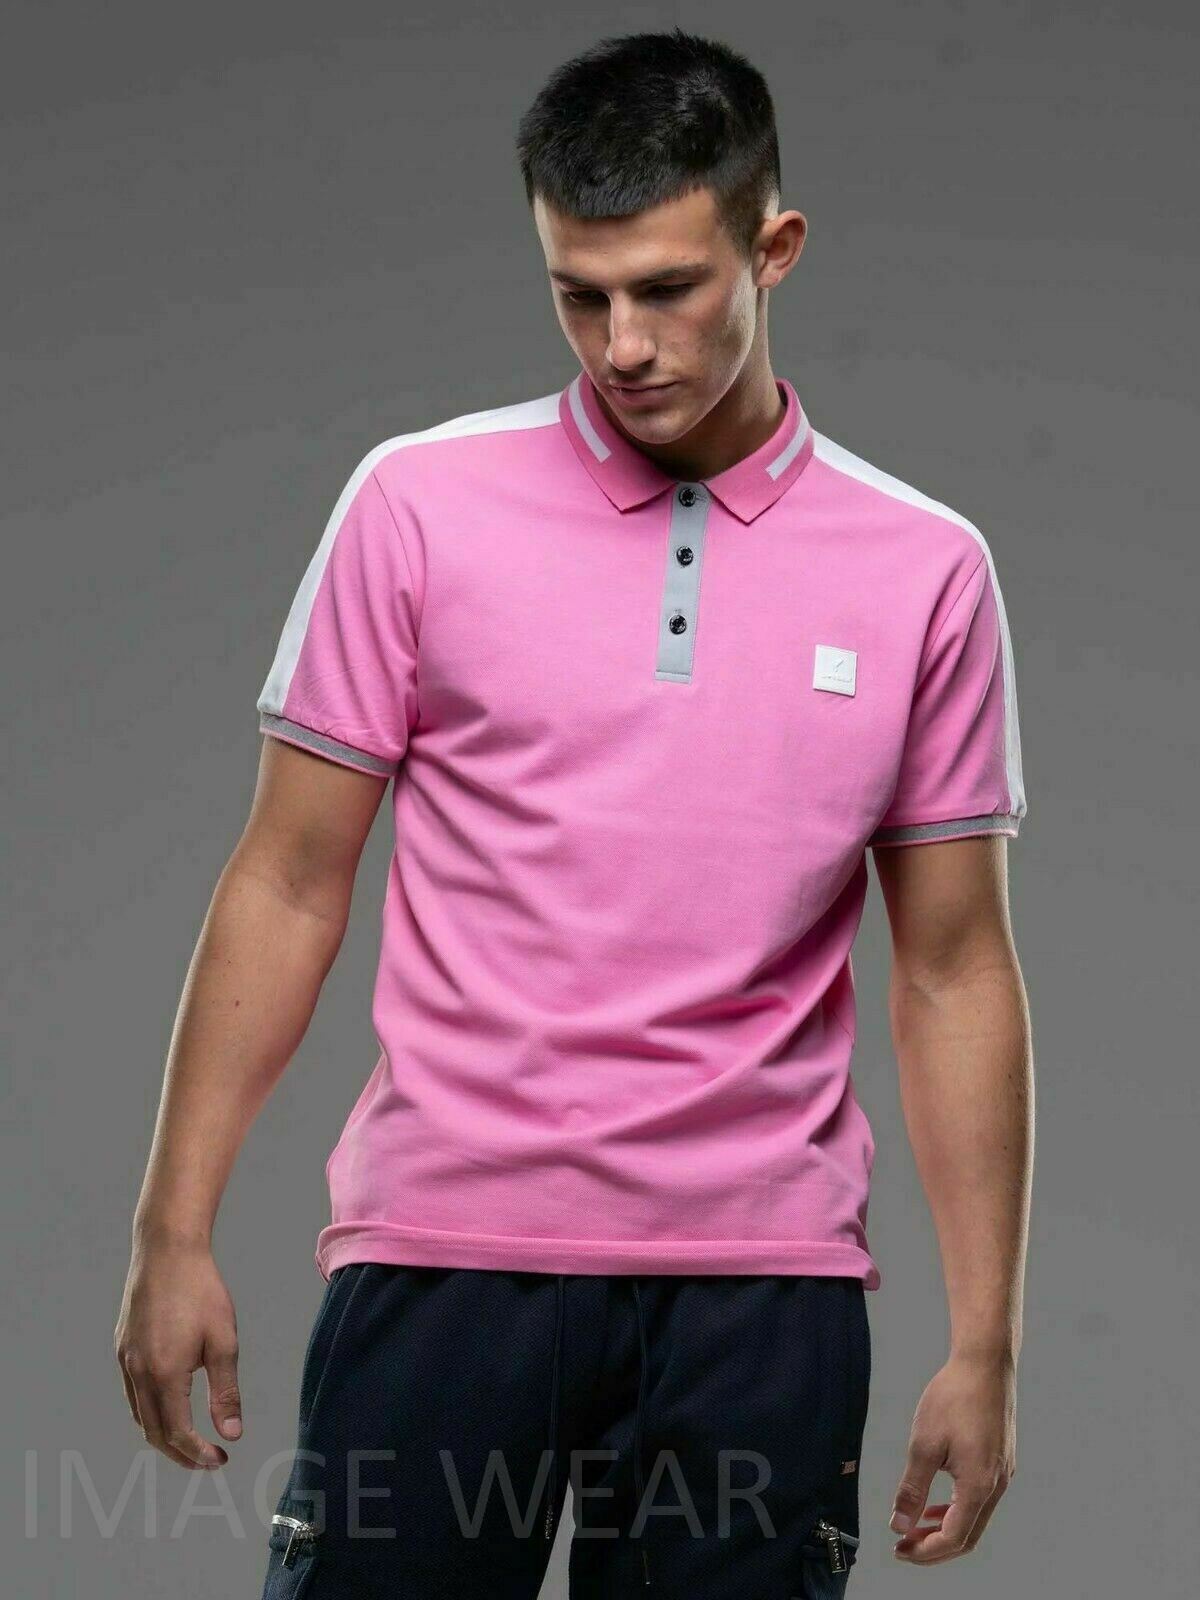 Cotton D-Rock Premium – Wear Stretch Polo Men\'s Image Pique Shirt